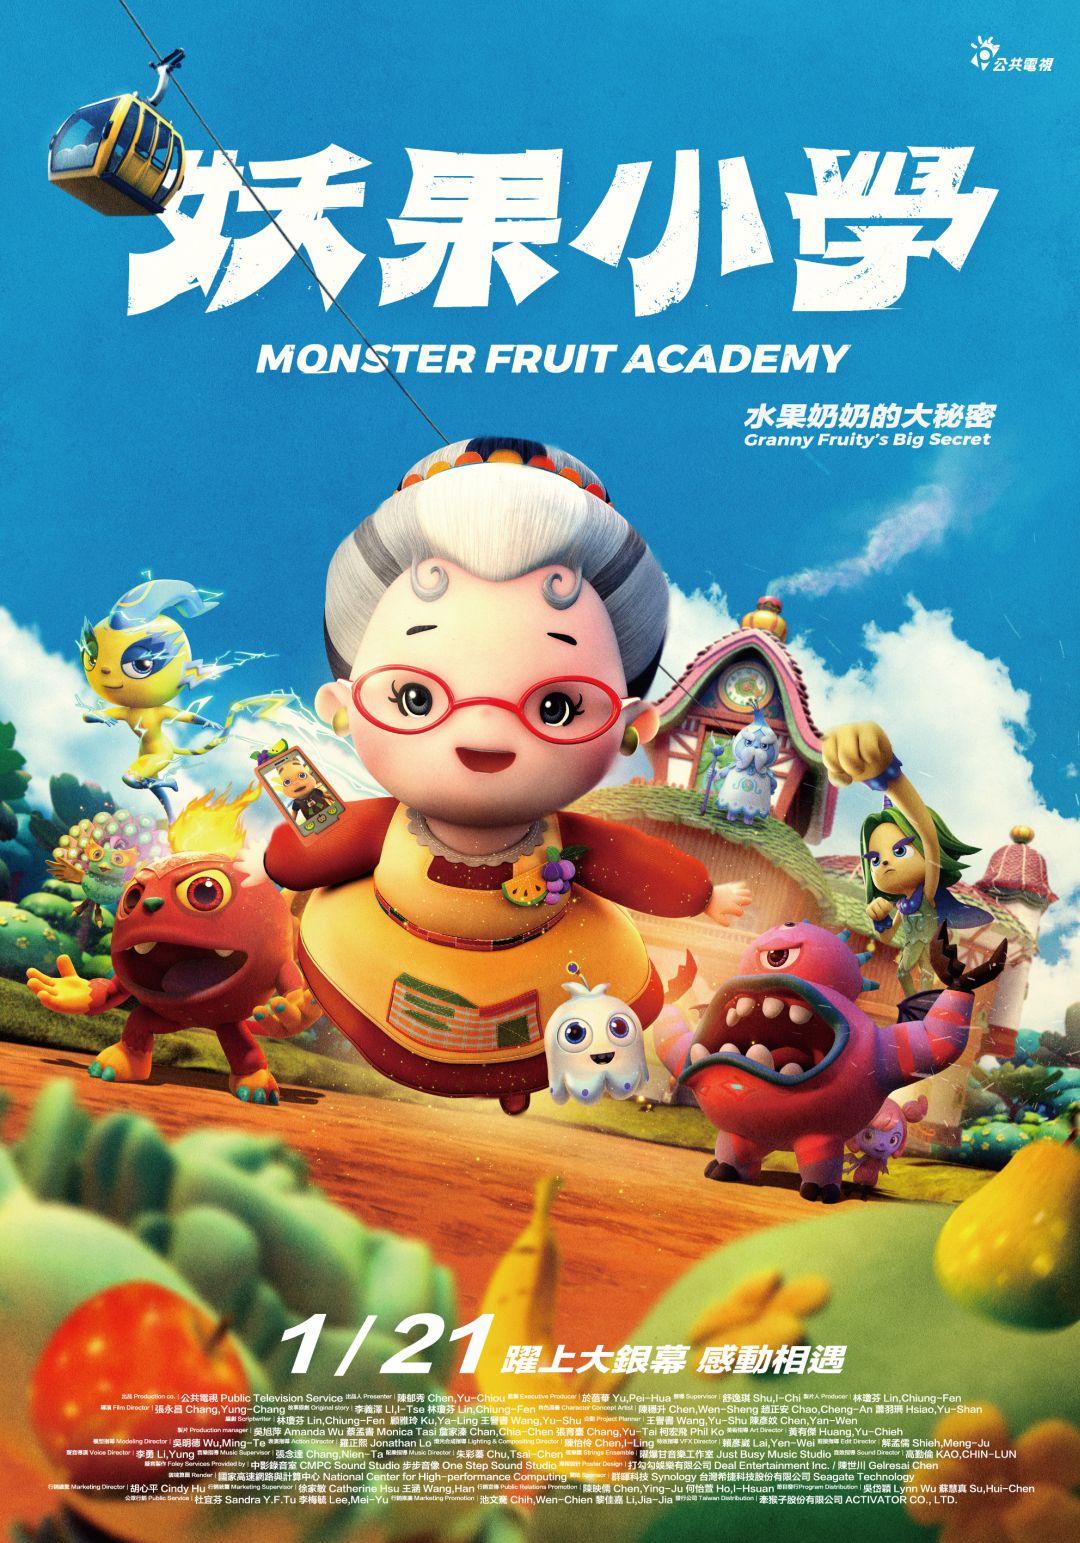 妖果小學-水果奶奶的大秘密Monster Fruit Academy